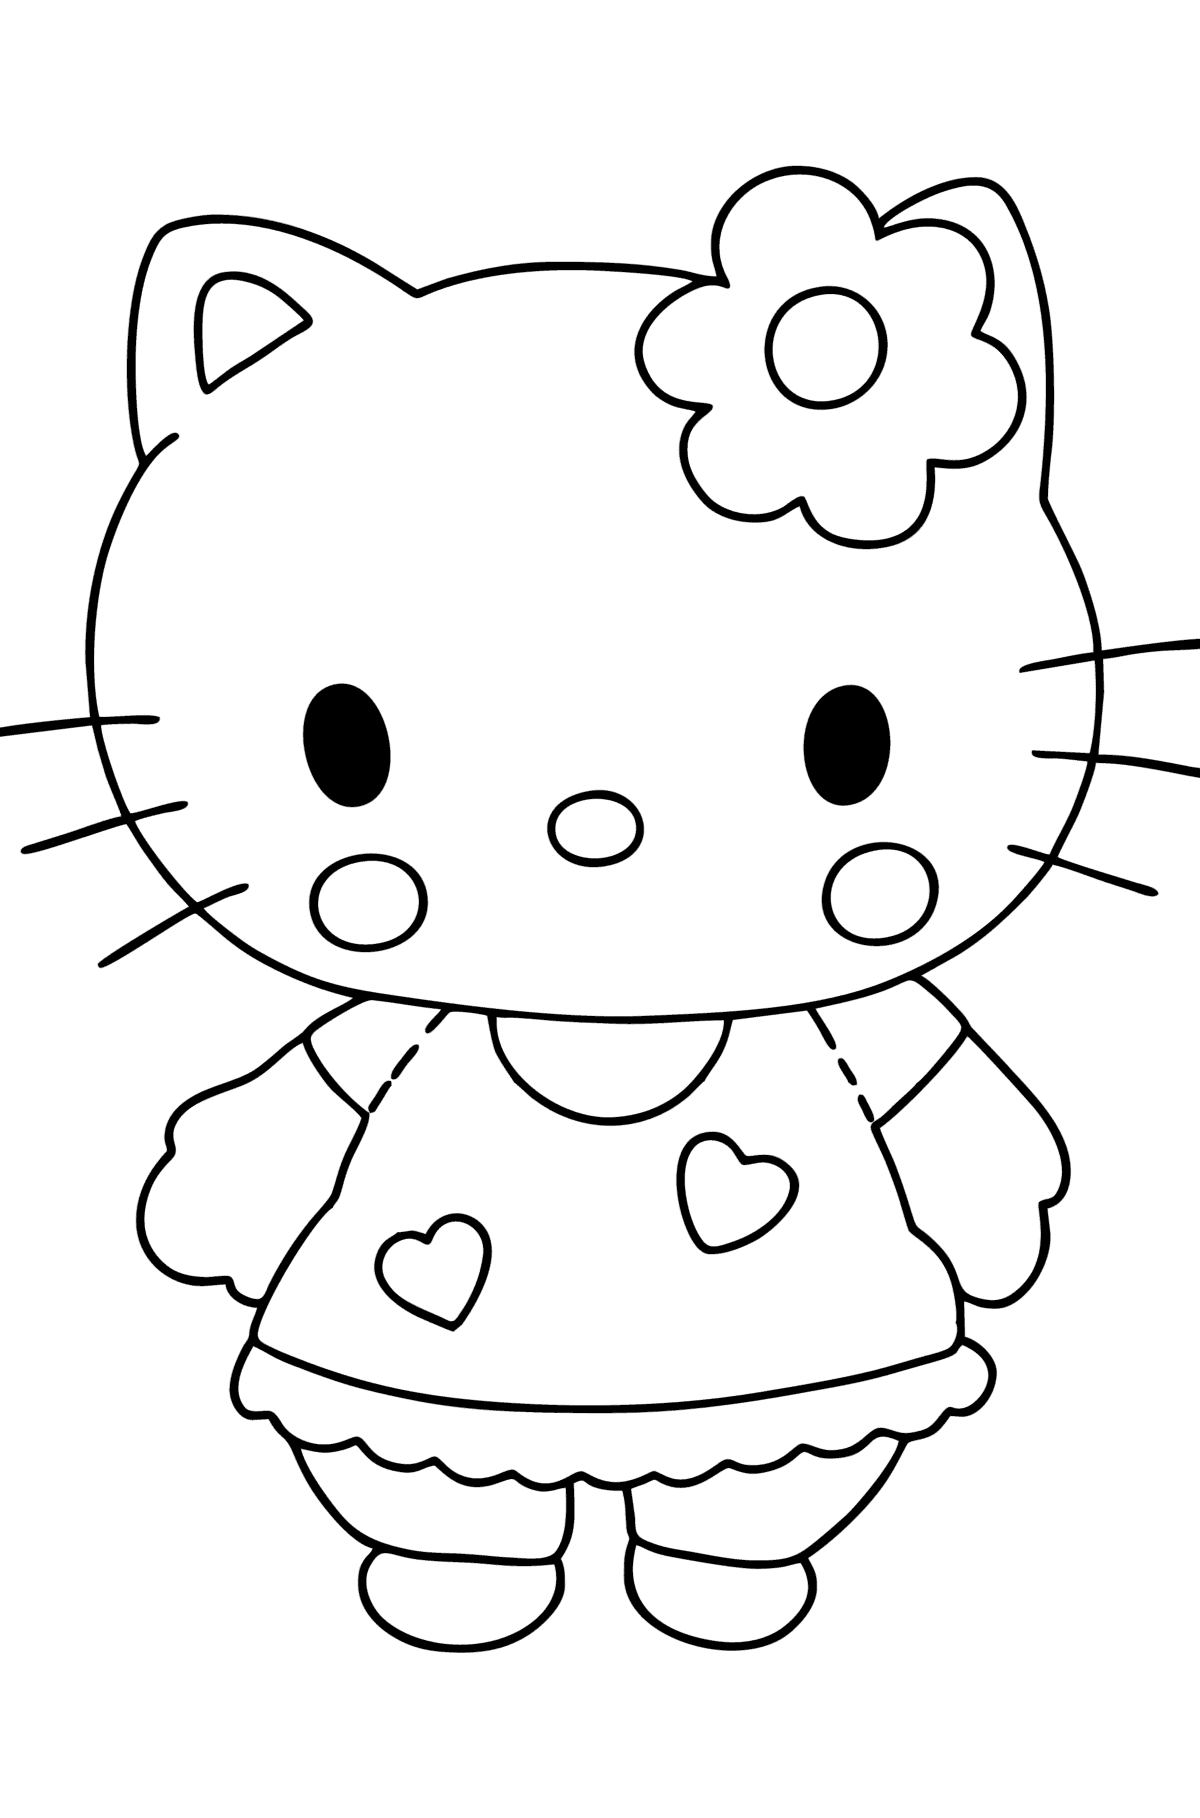 Boyama sayfası Hello Kitty - Boyamalar çocuklar için